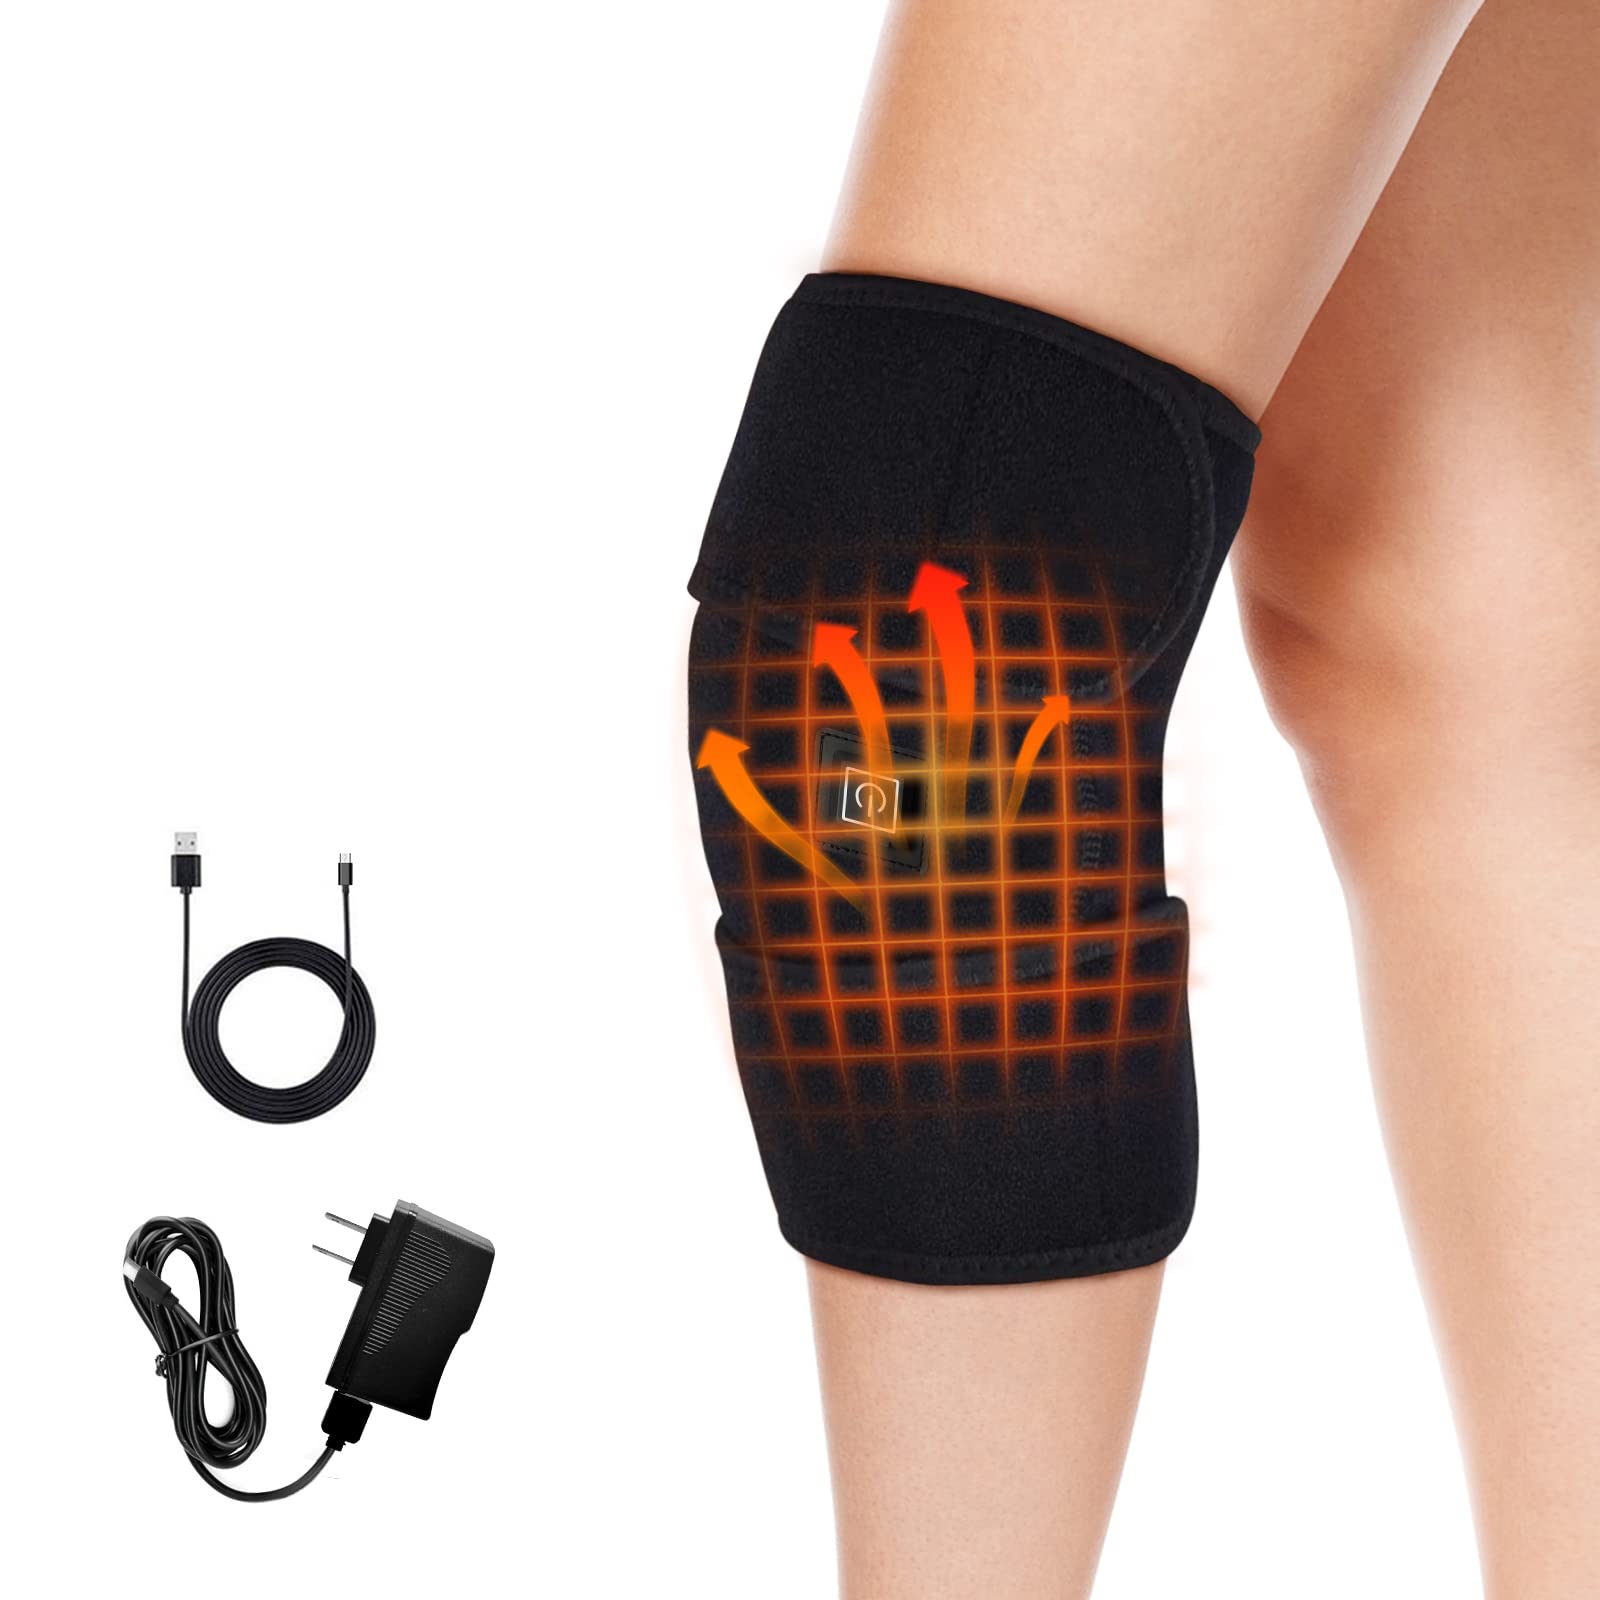 Knee Heating Pad Heated Knee Brace With 3 Adjustable Temperature